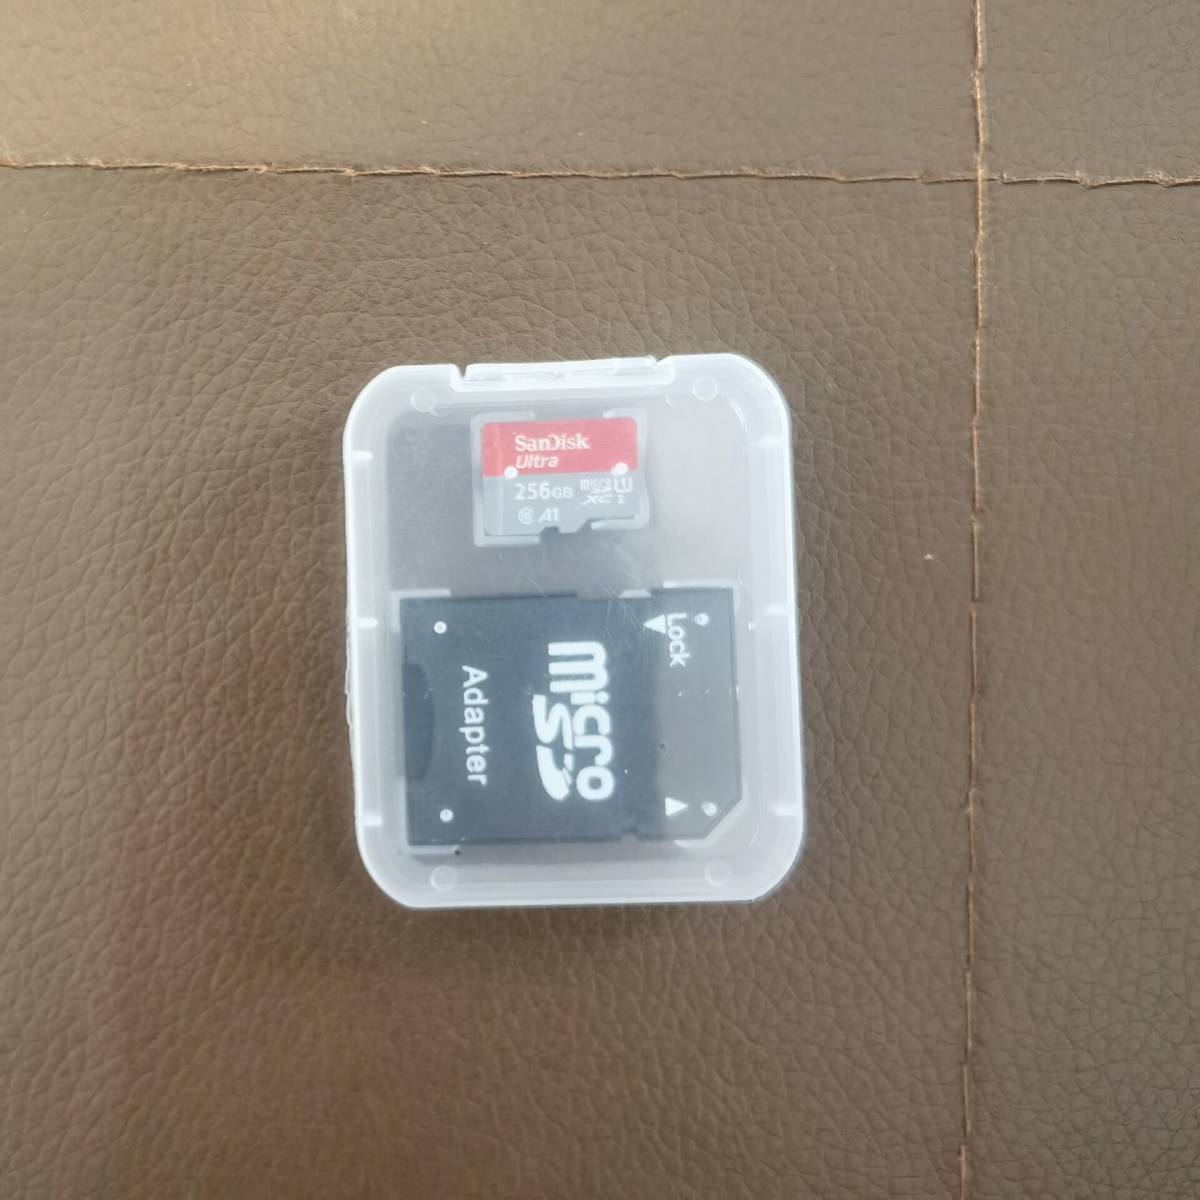 PC/タブレット PC周辺機器 microSDカード 256GB【3個セット】(SDカードとしても使用可能!) www 